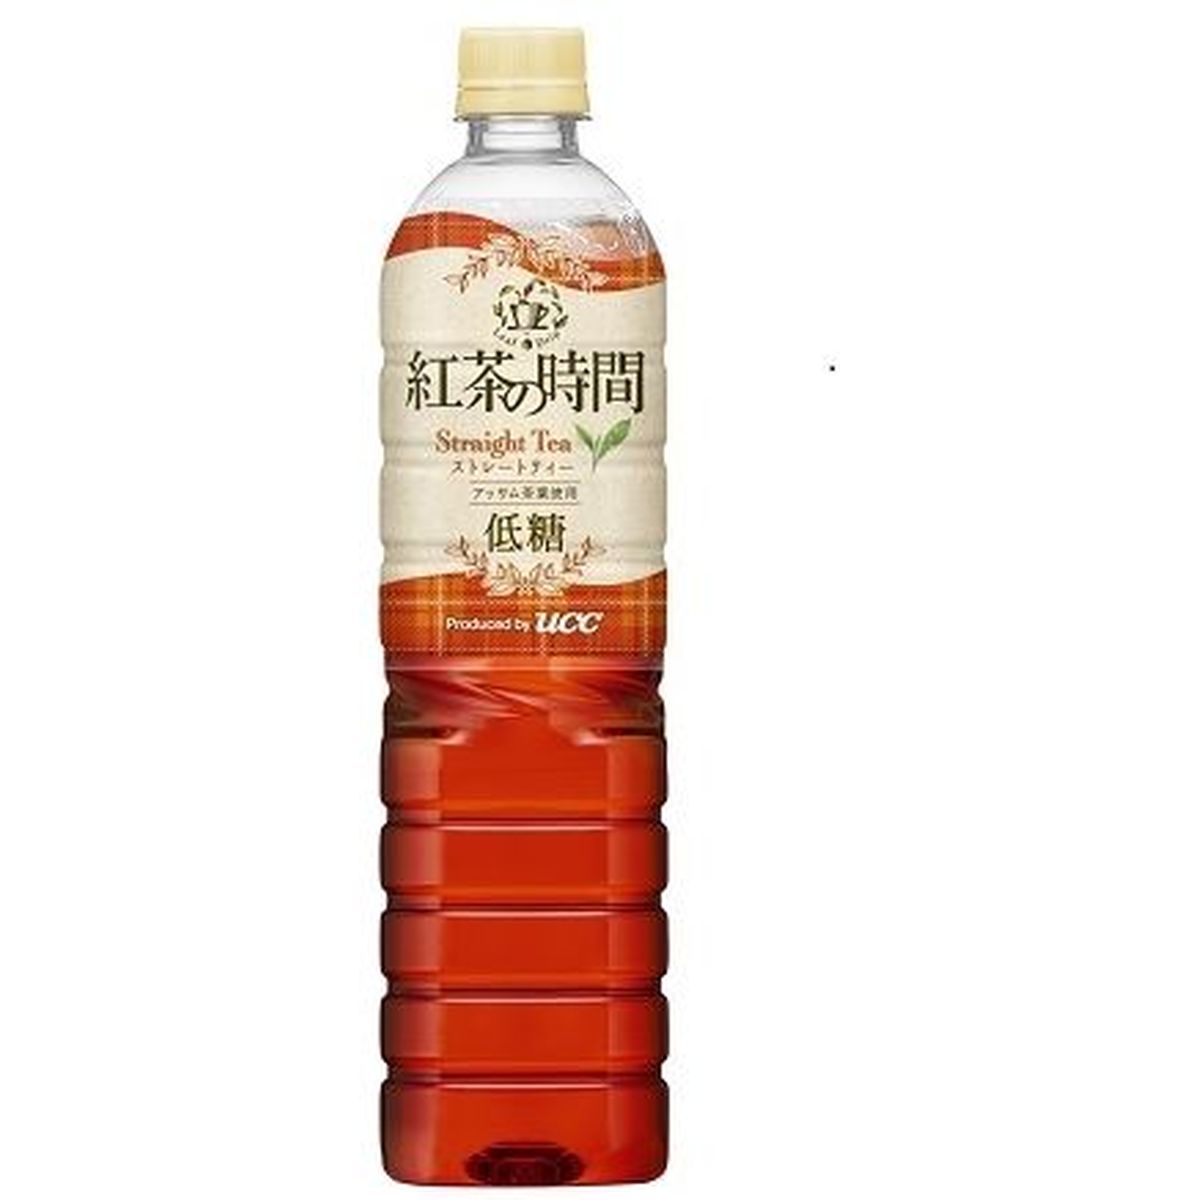 【12個入リ】UCC 紅茶ノ時間 ストレート 低糖 ペット 900ml